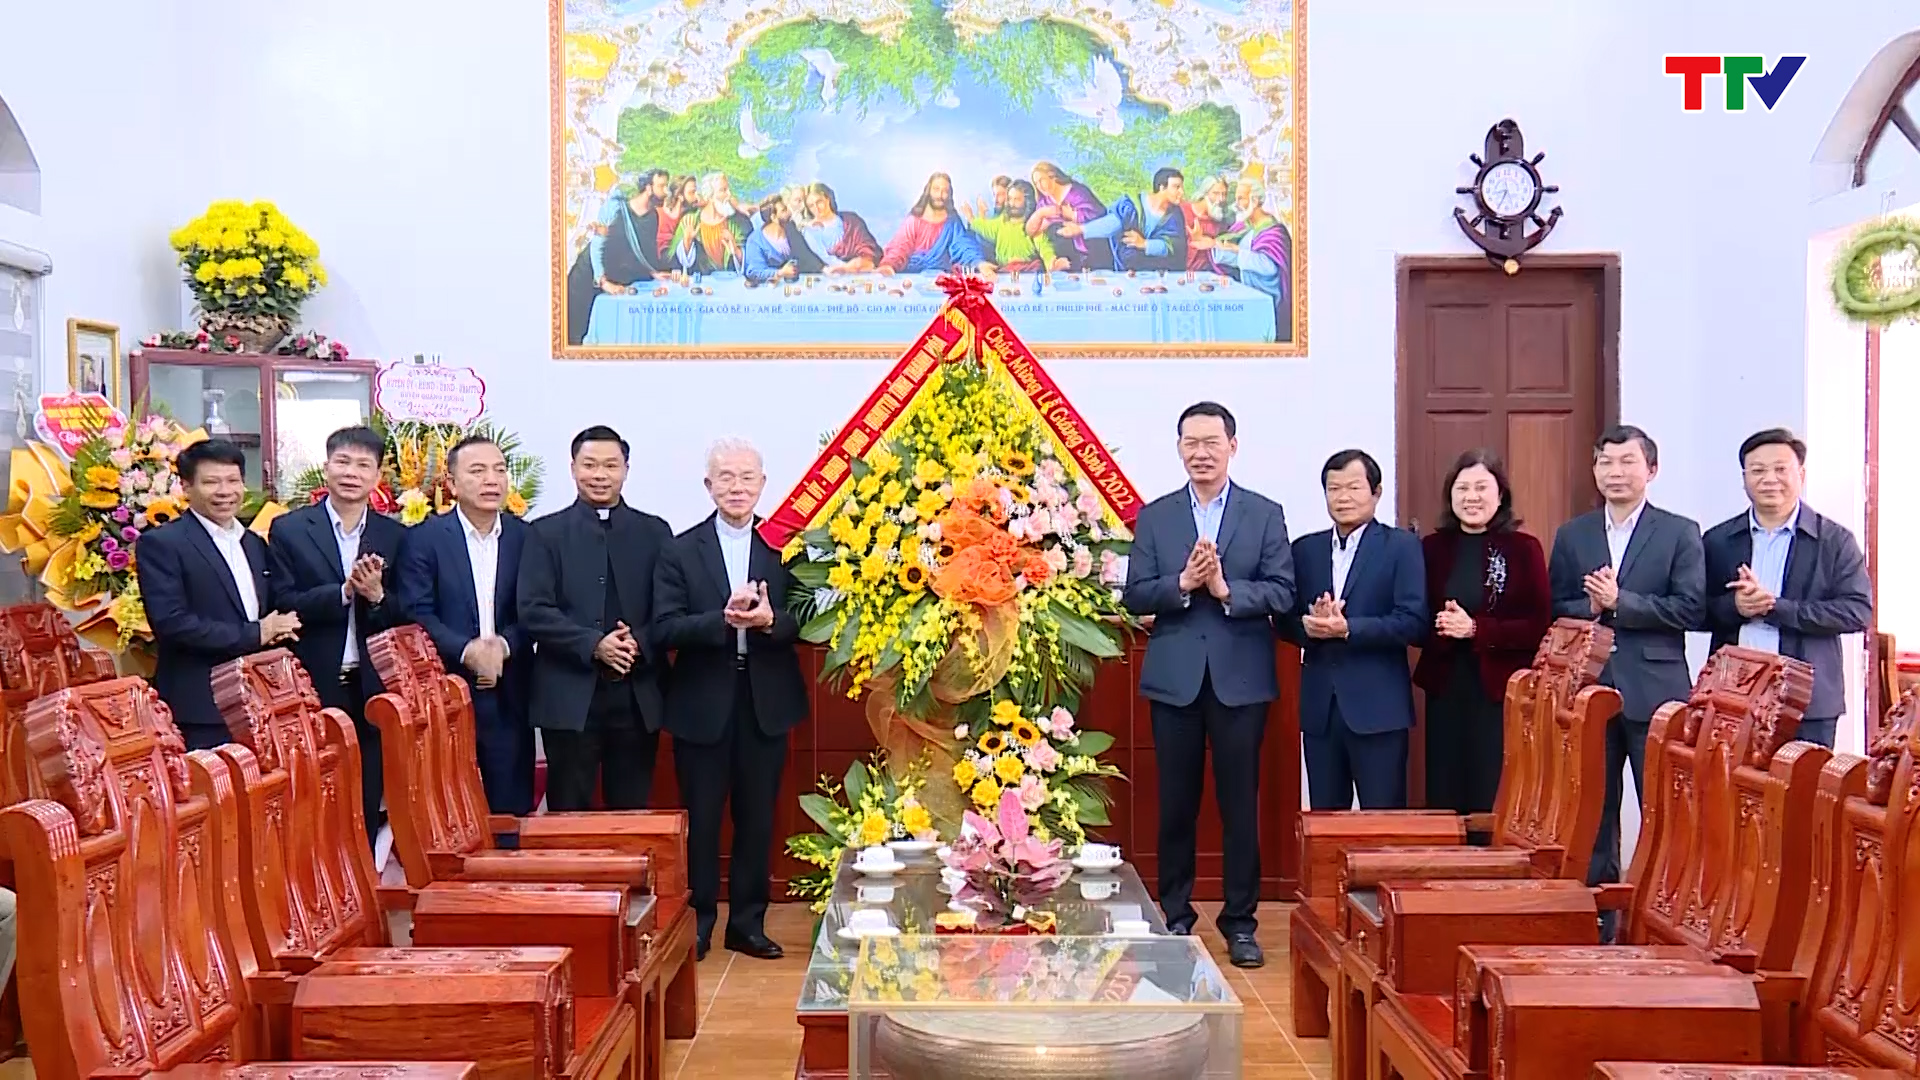 Phó Bí thư Tỉnh ủy Trịnh Tuấn Sinh chúc mừng giáng sinh - Ảnh 2.